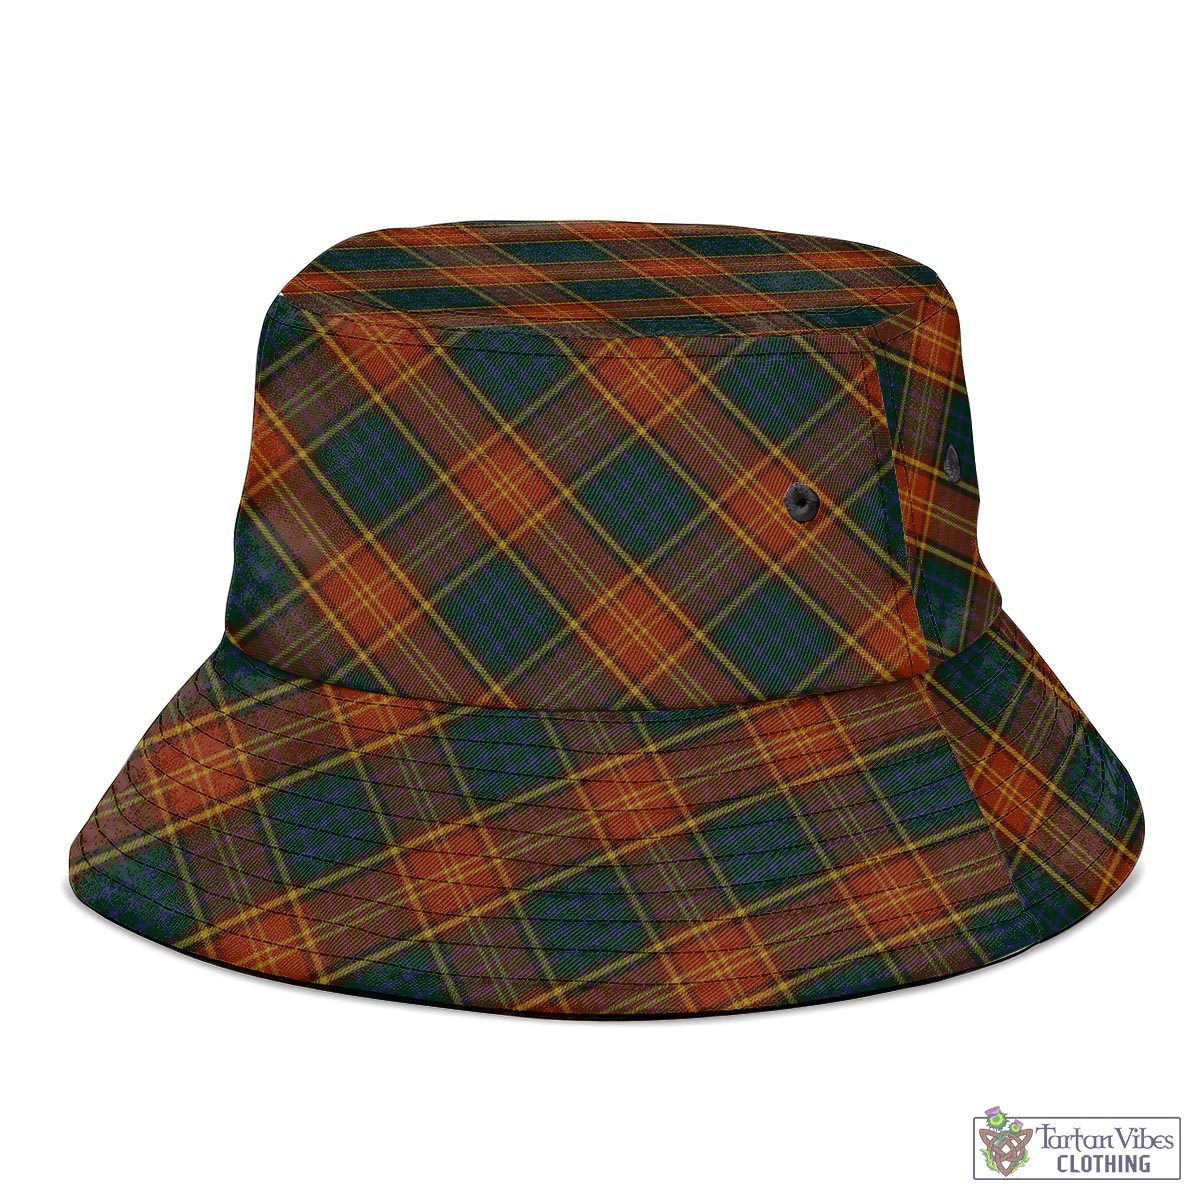 Tartan Vibes Clothing Roscommon County Ireland Tartan Bucket Hat